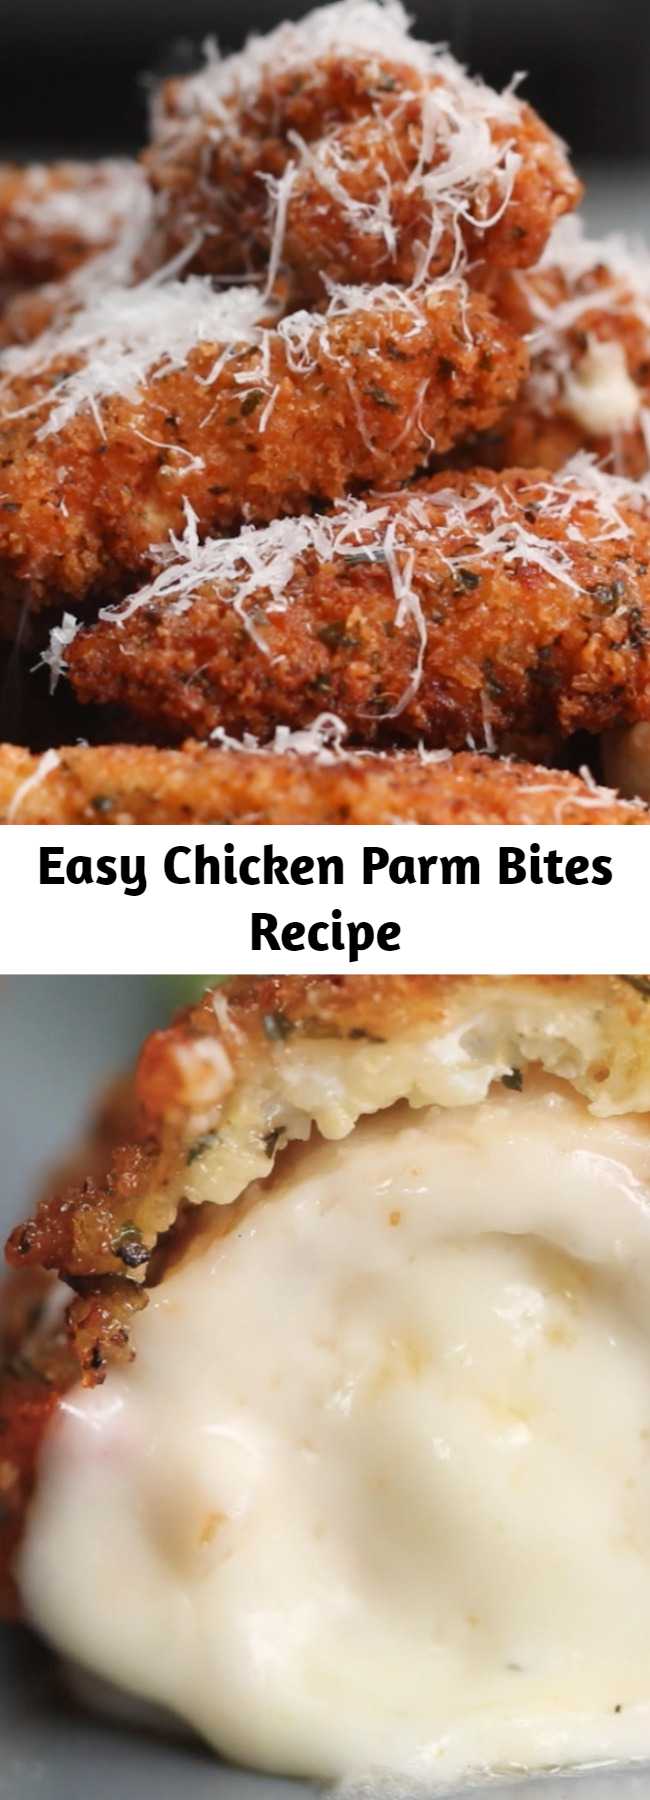 Easy Chicken Parm Bites Recipe